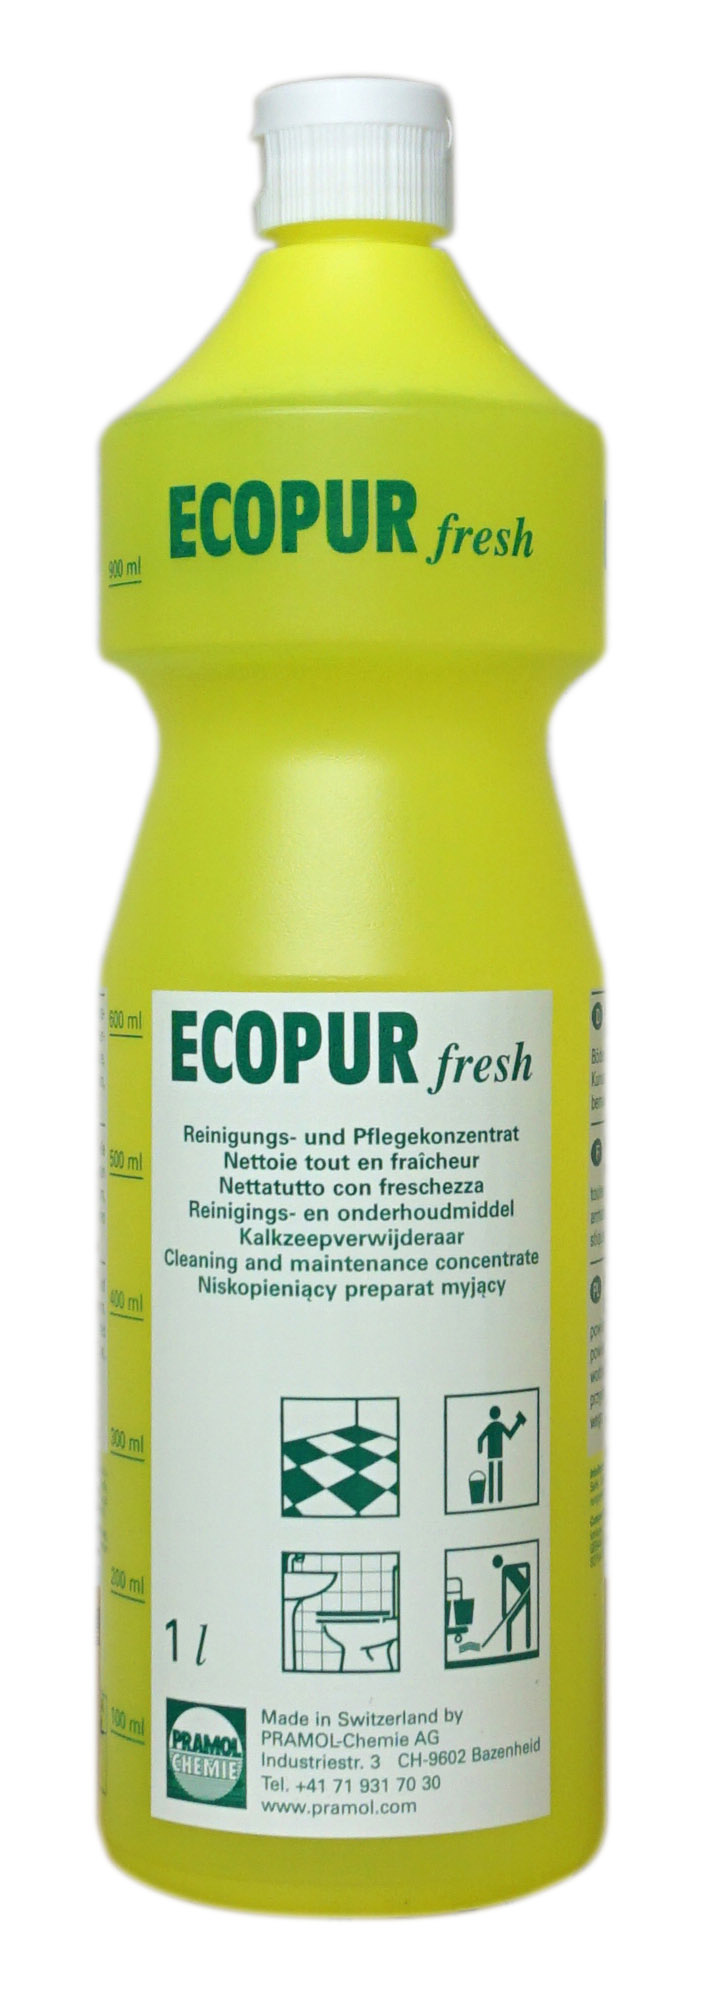 Pramol ecopur fresh, Reinigungs- und Pflegekonzentrat, 1 Liter